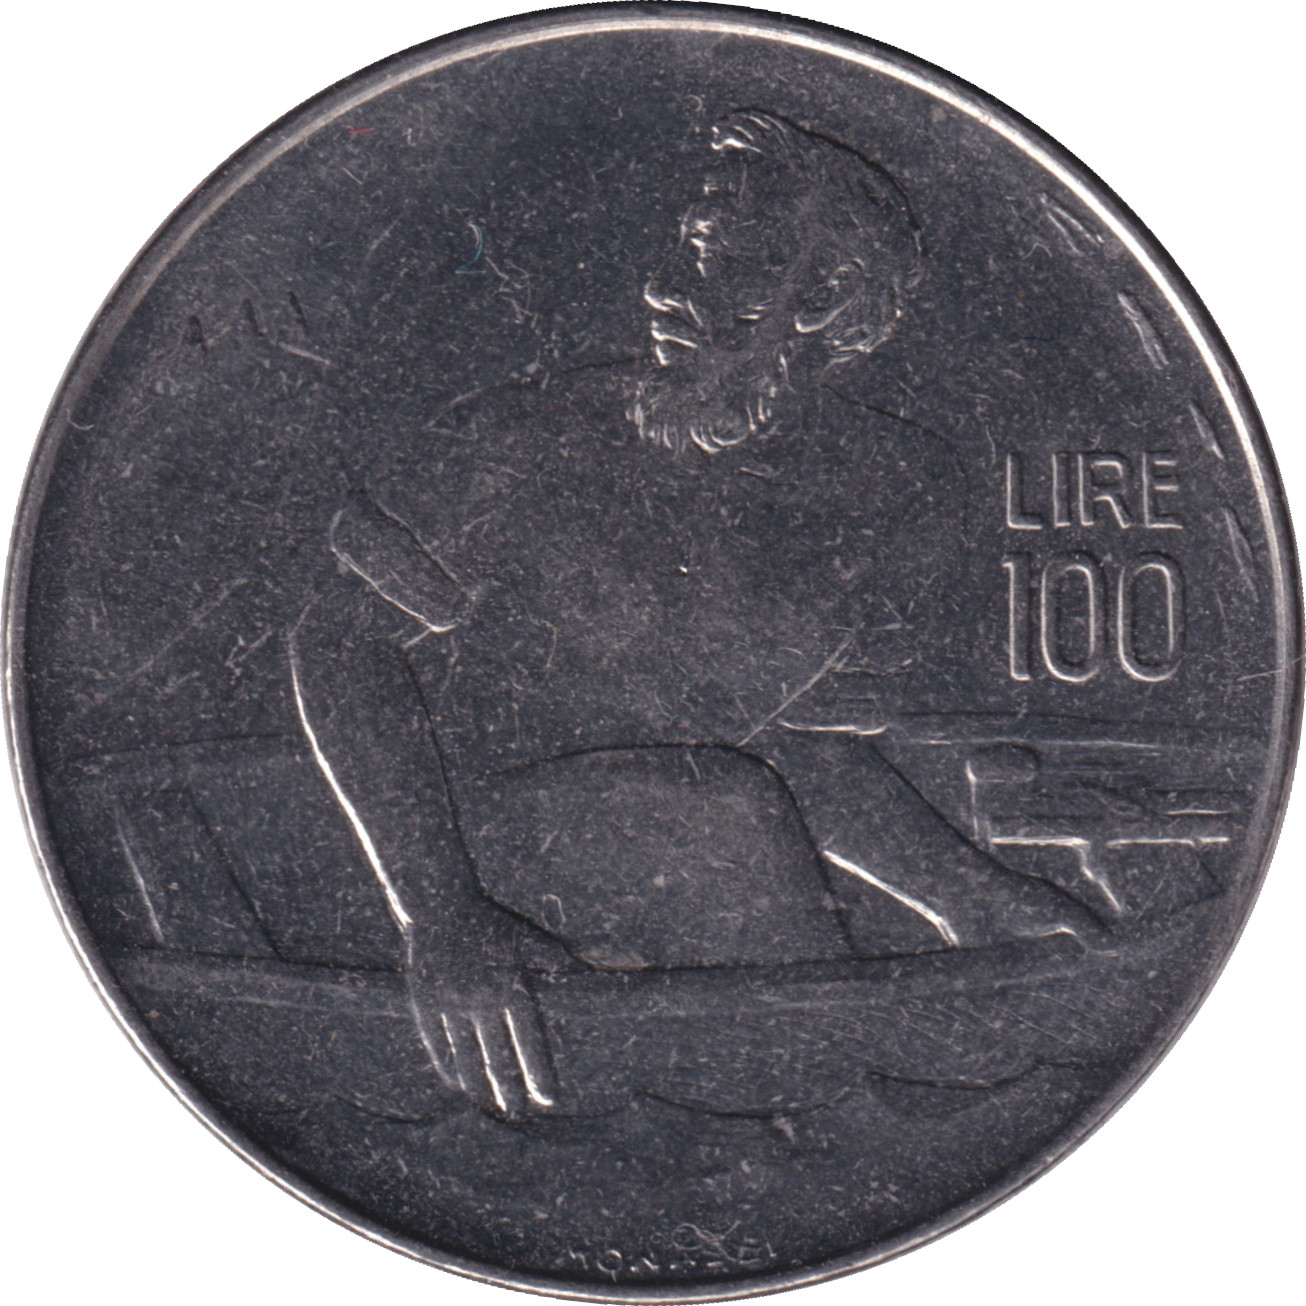 100 lire - Saint Marin